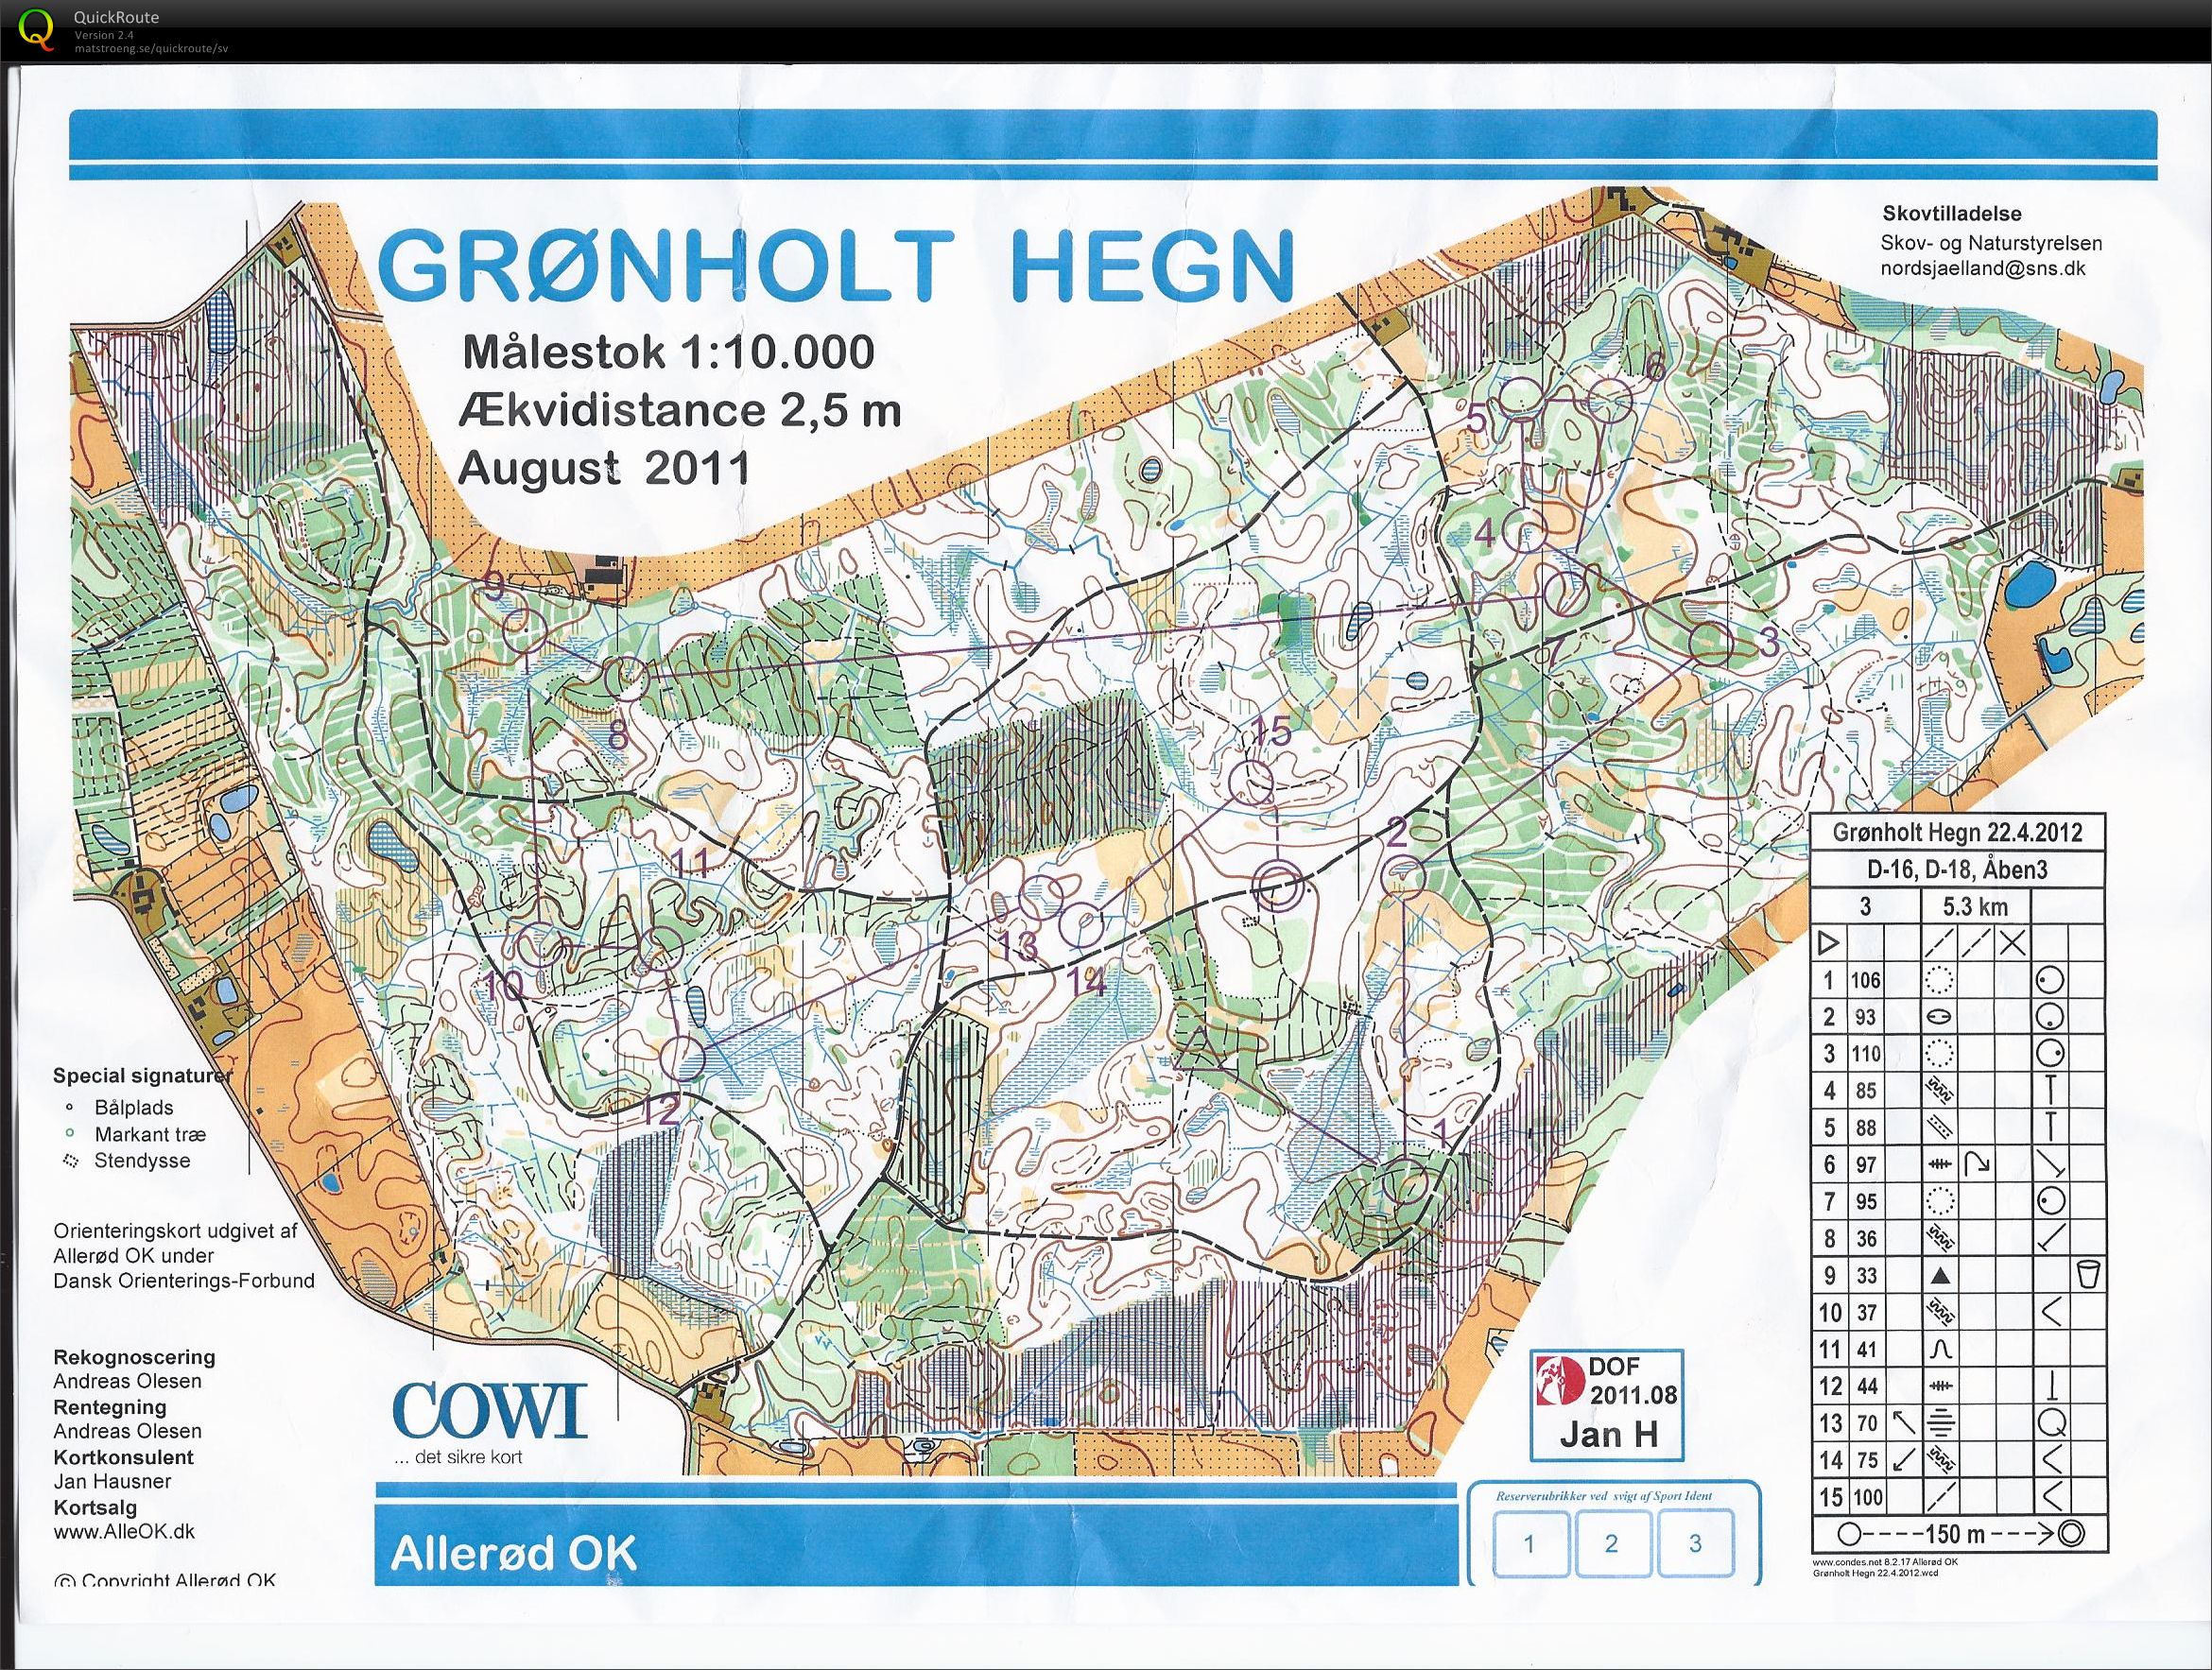 "Grønholt O-challenge" (22-04-2012)